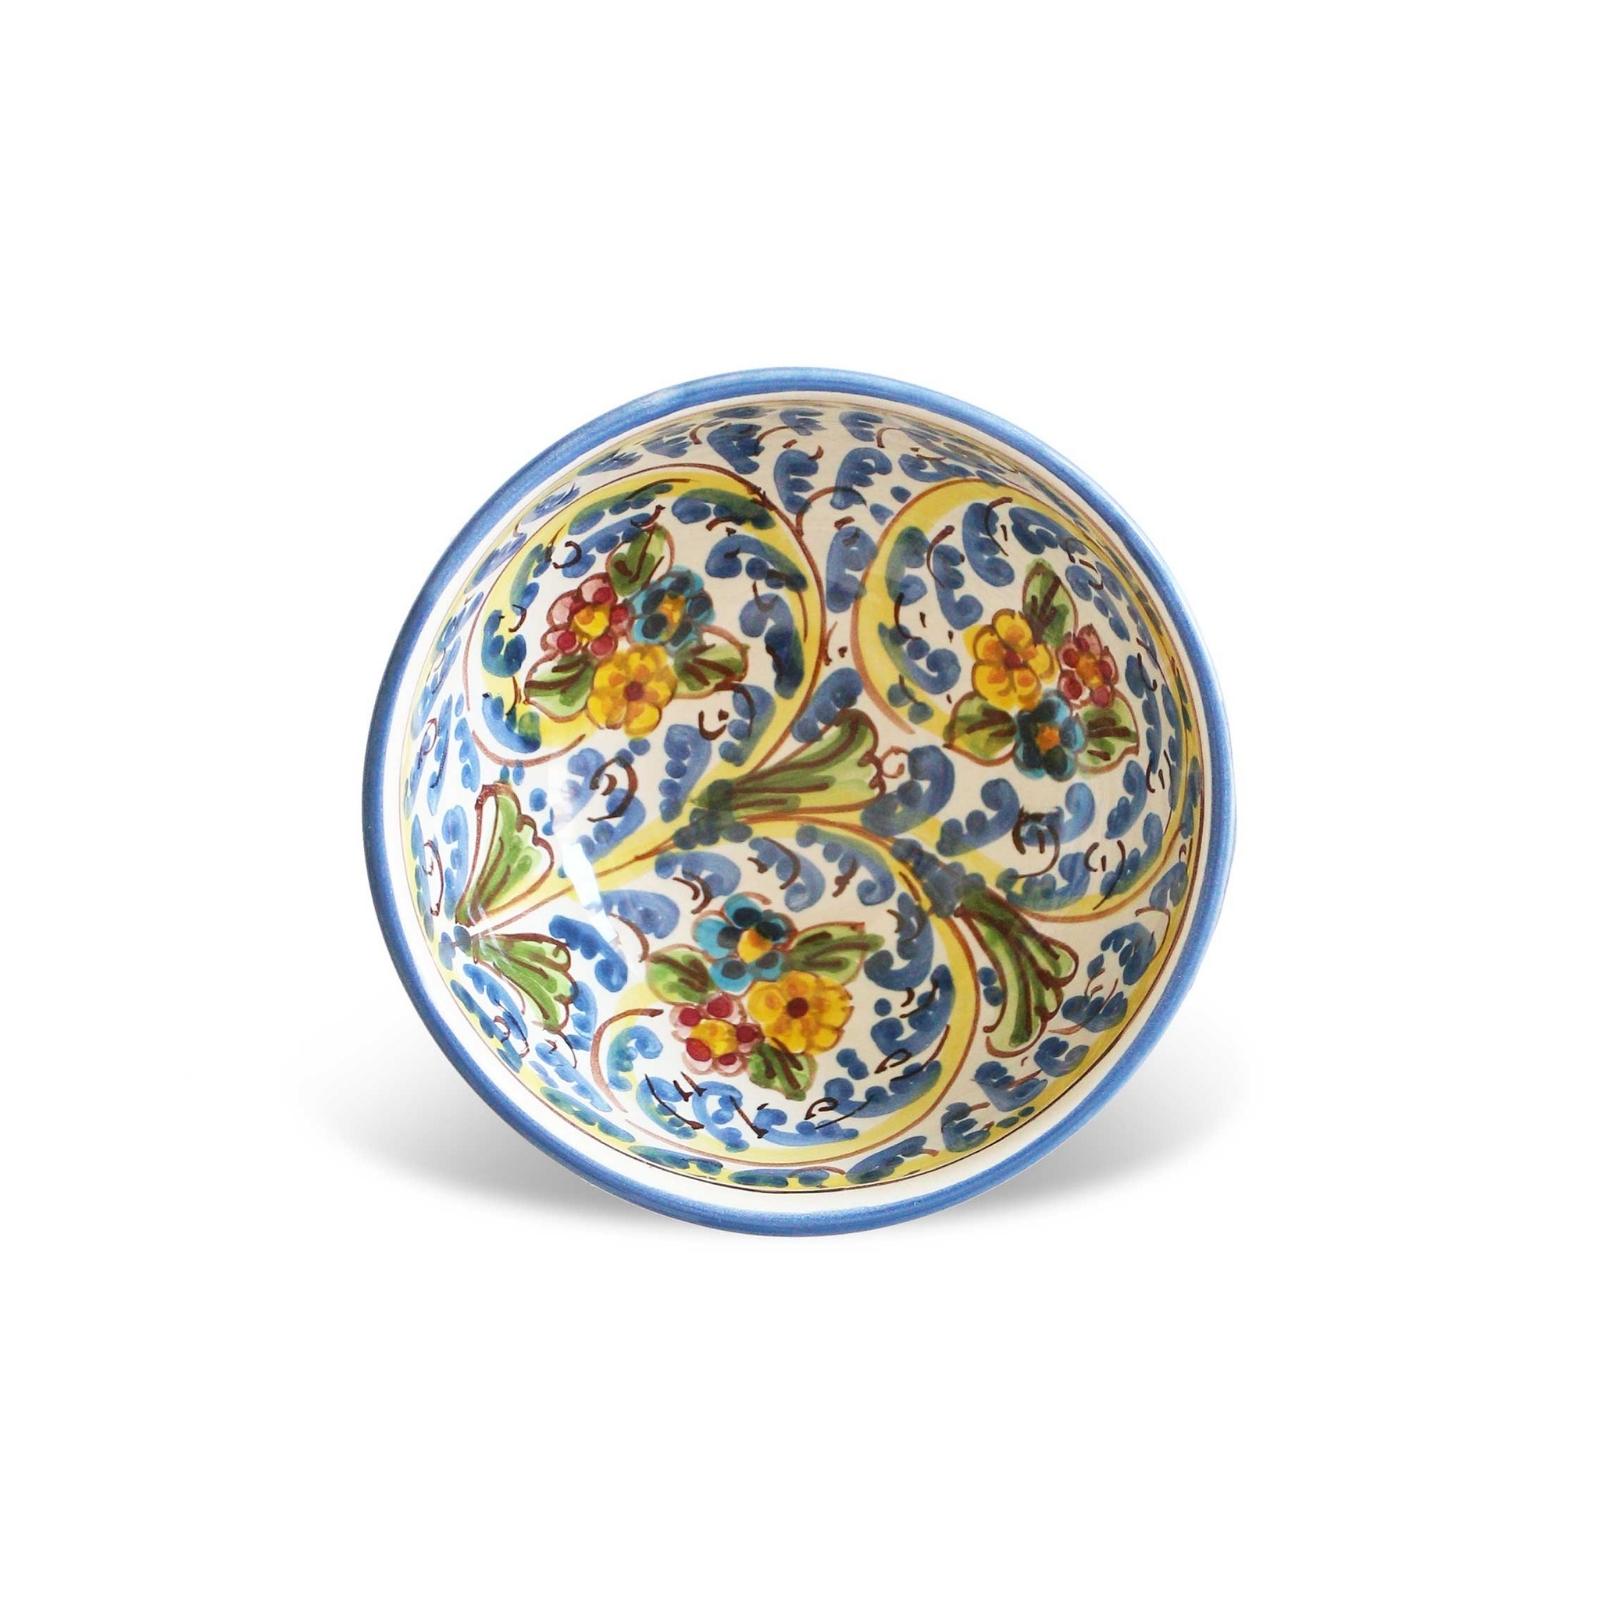 Decorated sicilian ceramic bowl 12 cm  Gangi